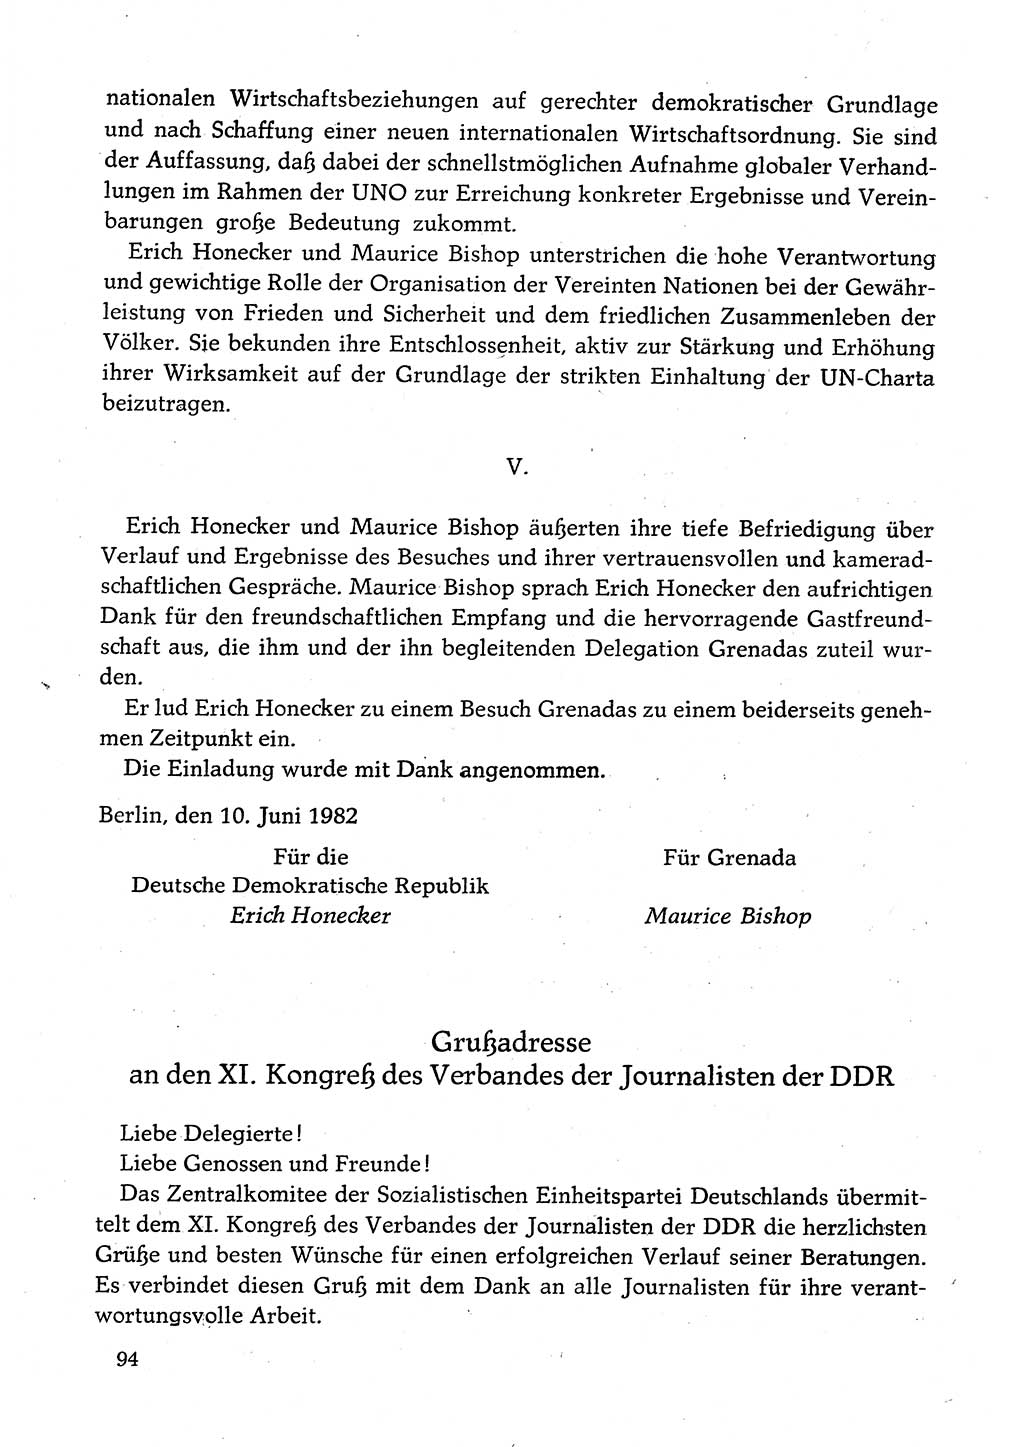 Dokumente der Sozialistischen Einheitspartei Deutschlands (SED) [Deutsche Demokratische Republik (DDR)] 1982-1983, Seite 94 (Dok. SED DDR 1982-1983, S. 94)